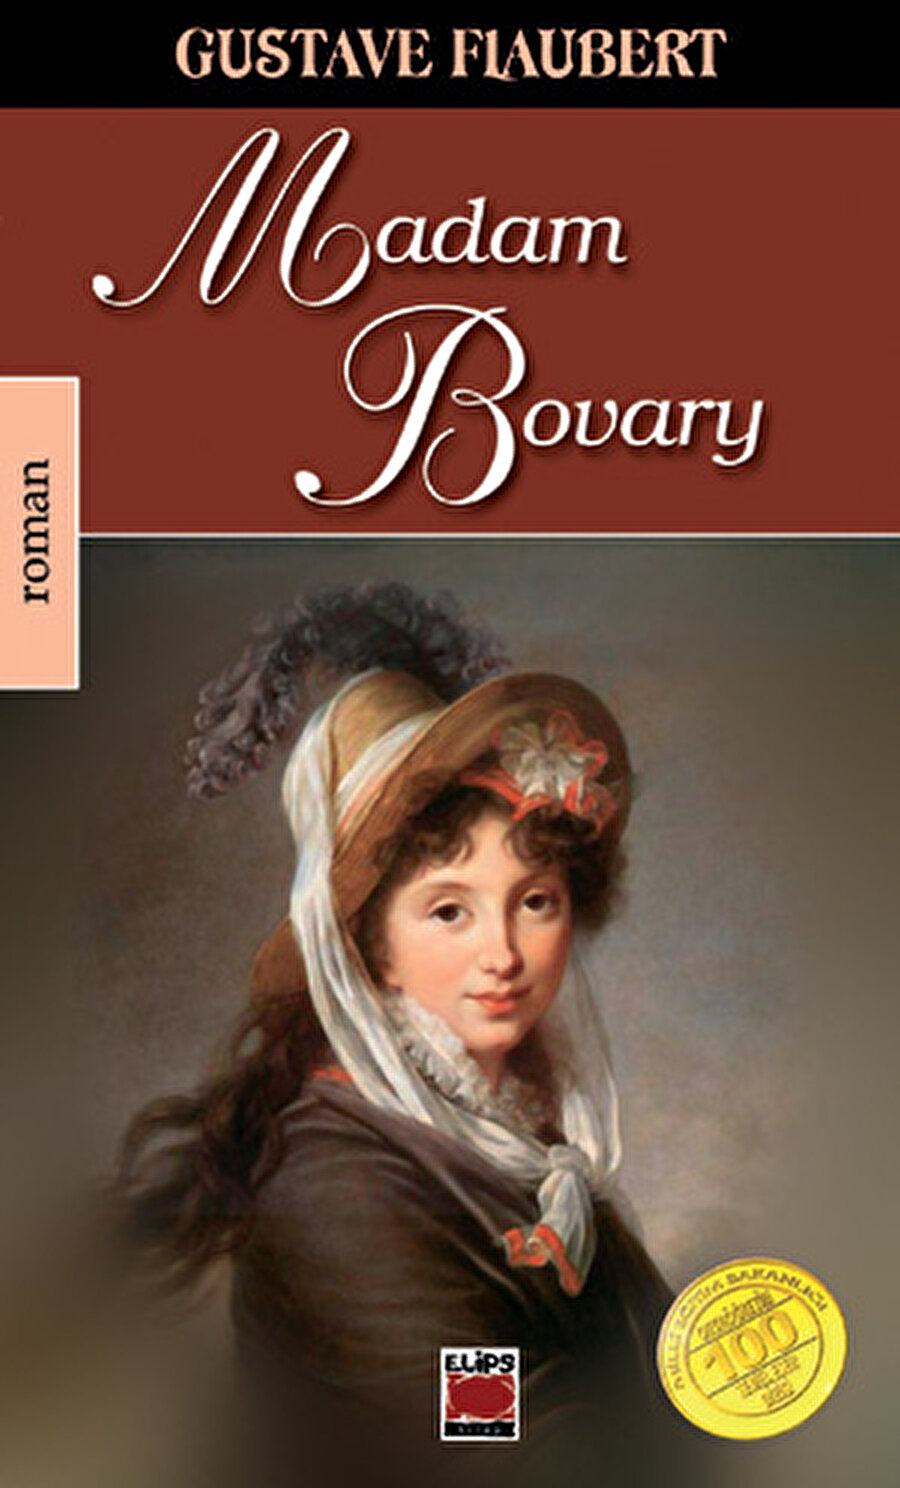 Flaubert-Madame Bovary

                                    "Yazın tarihinde Madame Bovary ölçüsünde ilgi uyandırmış, Madame Bovary ölçüsünde tartışmalara, değişik yorumlara konu olmuş bir roman daha göstermek zordur… [Madame Bovary'nin] hiç kuşkusuz, roman sanatının belli başlı doruklarından biri olduğu söylenebilir… Roman denildi mi usumuza ilk gelen yapıtlardan biri Madame Bovary'dir, Flaubert denilince de önce Madame Bovary'yi düşünürüz."
                                